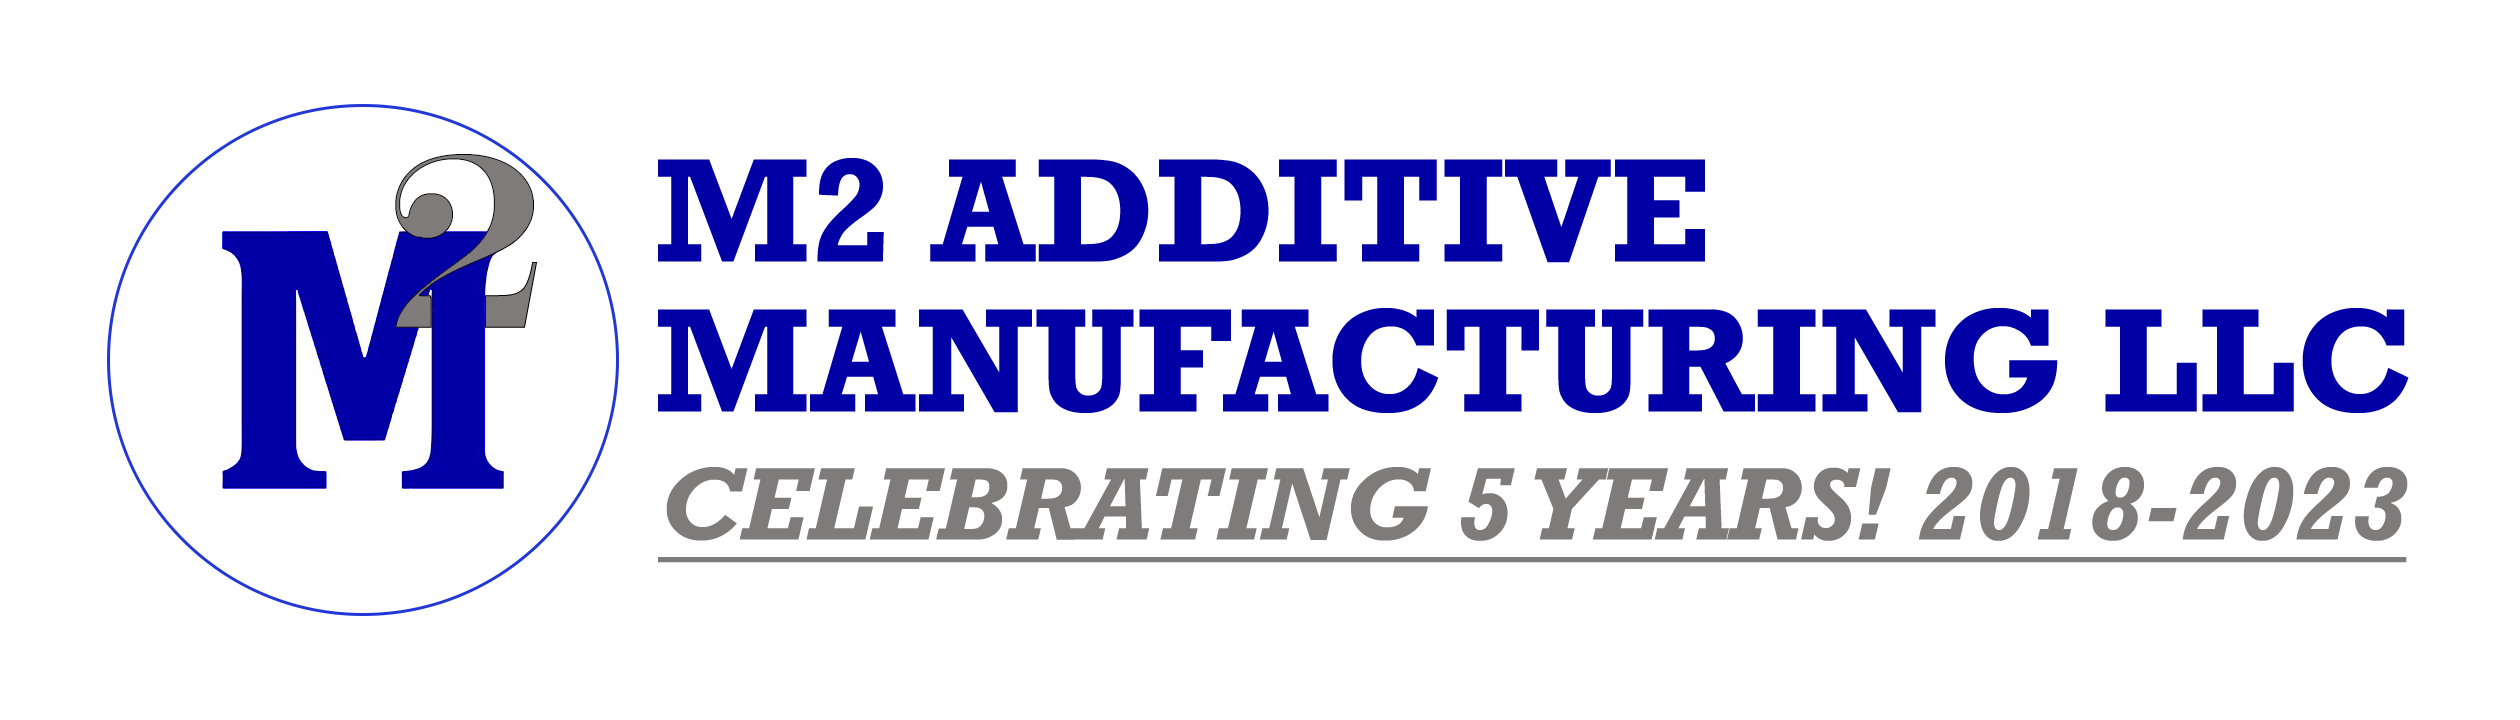 M2 Additive Manufacturing